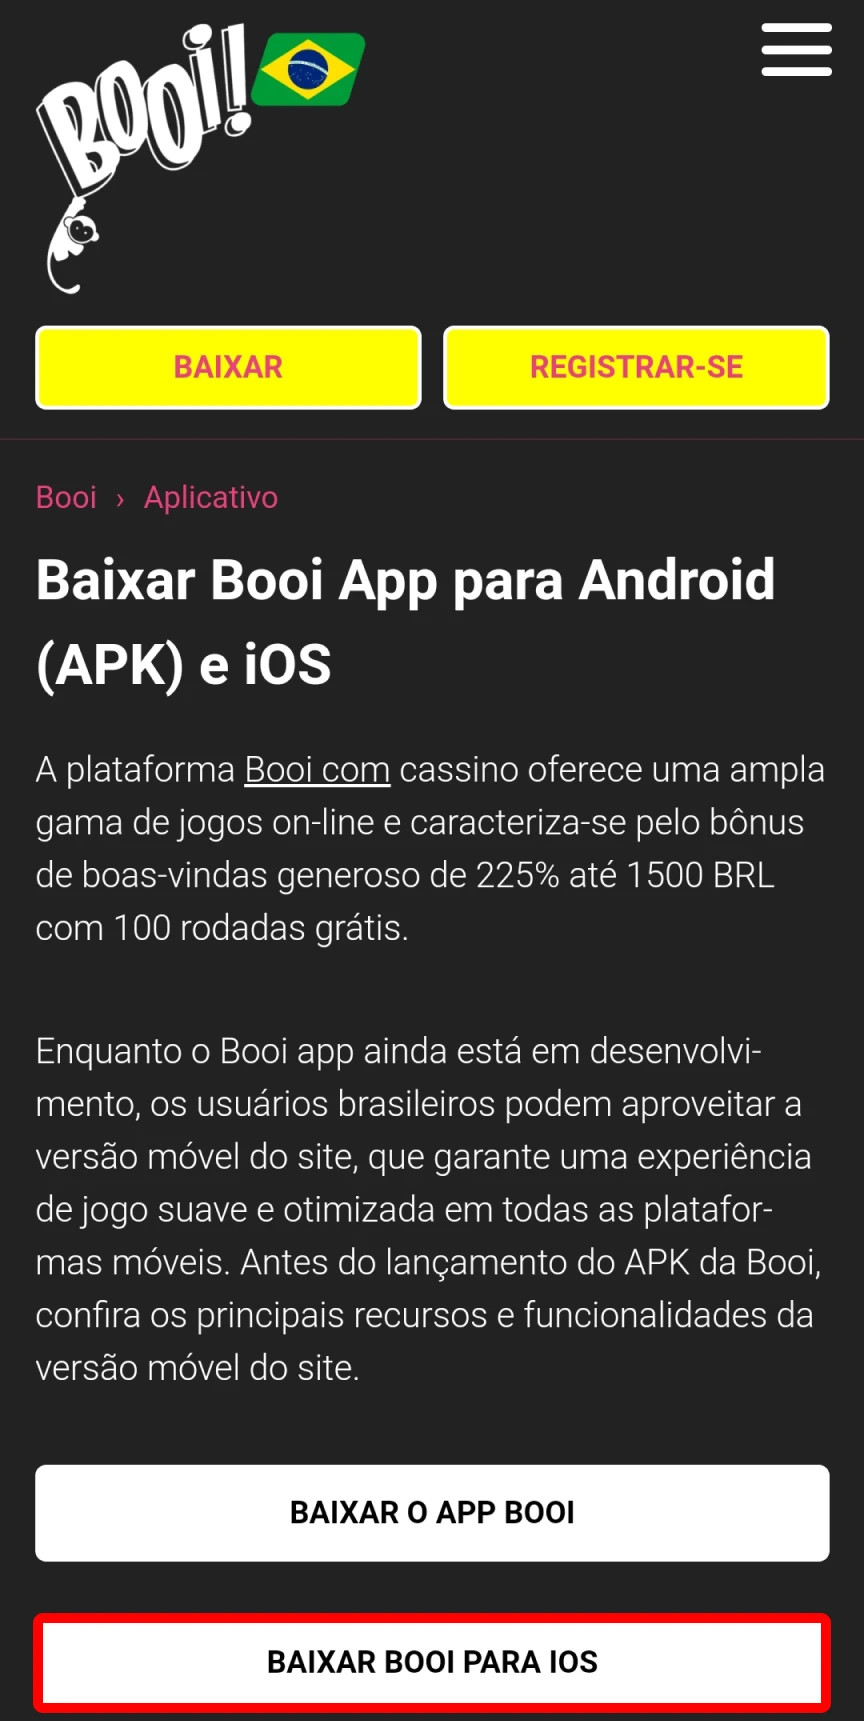 Visite a página oficial do site Booi https://booi1.com.br/aplicativo/ para iOS.